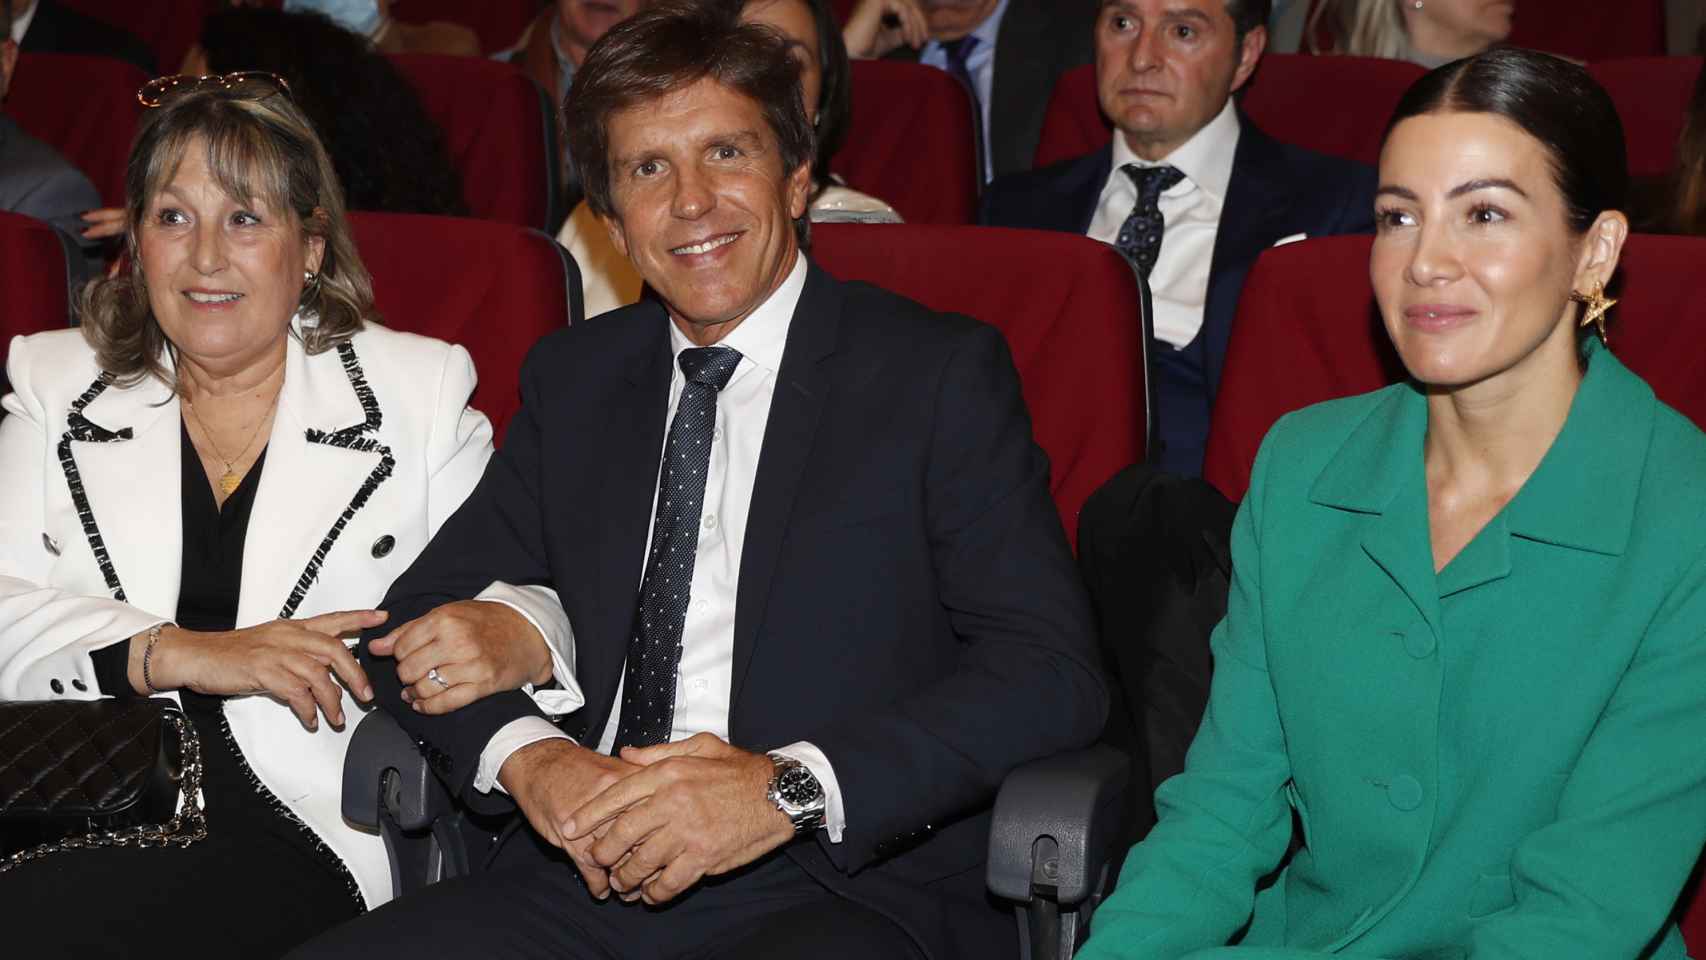 María de los Ángeles junto a Manuel Díaz y la esposa de éste, Virginia Troconis, sentados juntos en el evento.